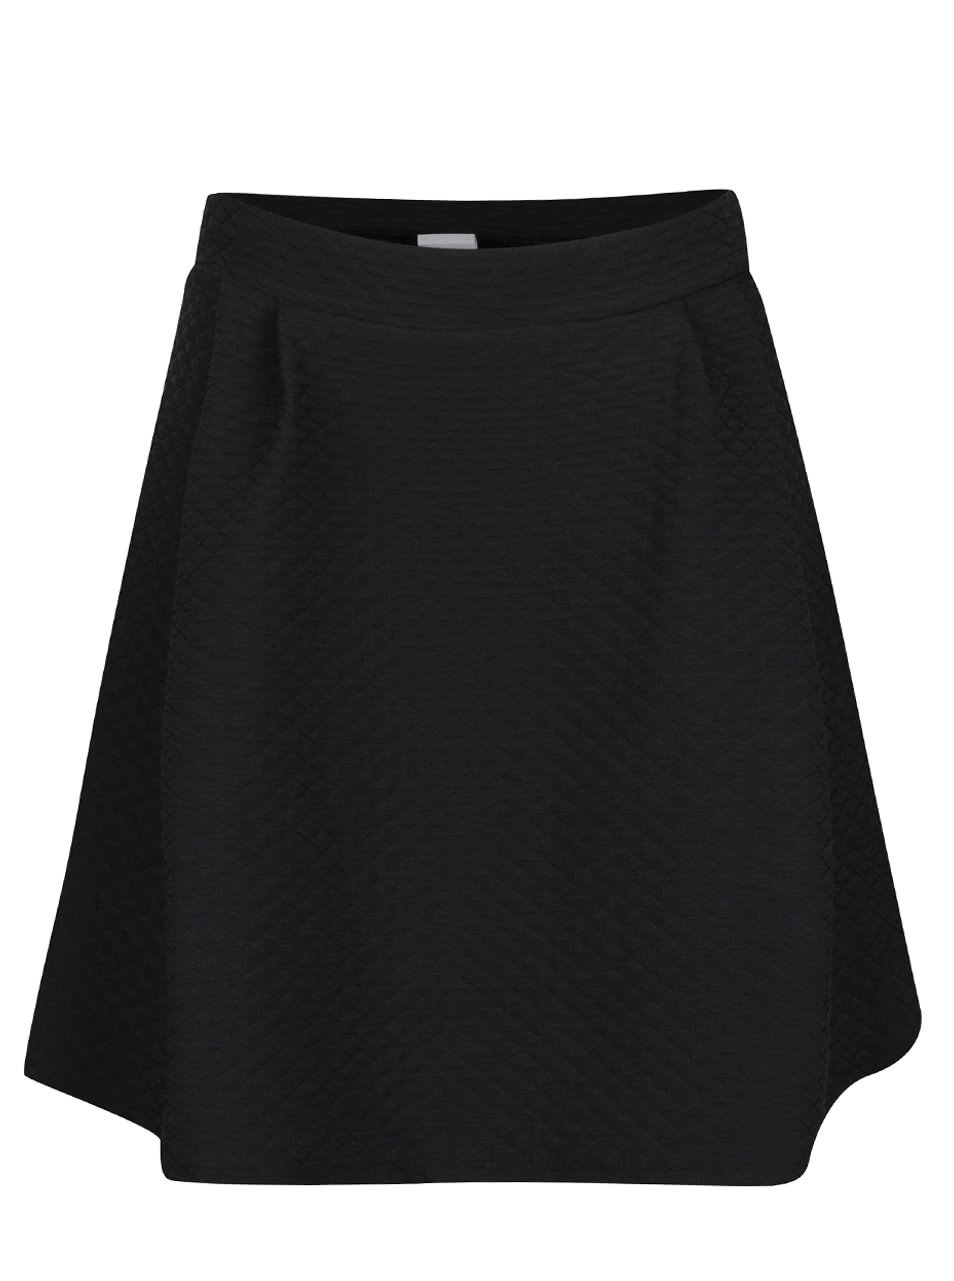 Černá překládaná sukně s jemným plastickým vzorem VILA Mounta